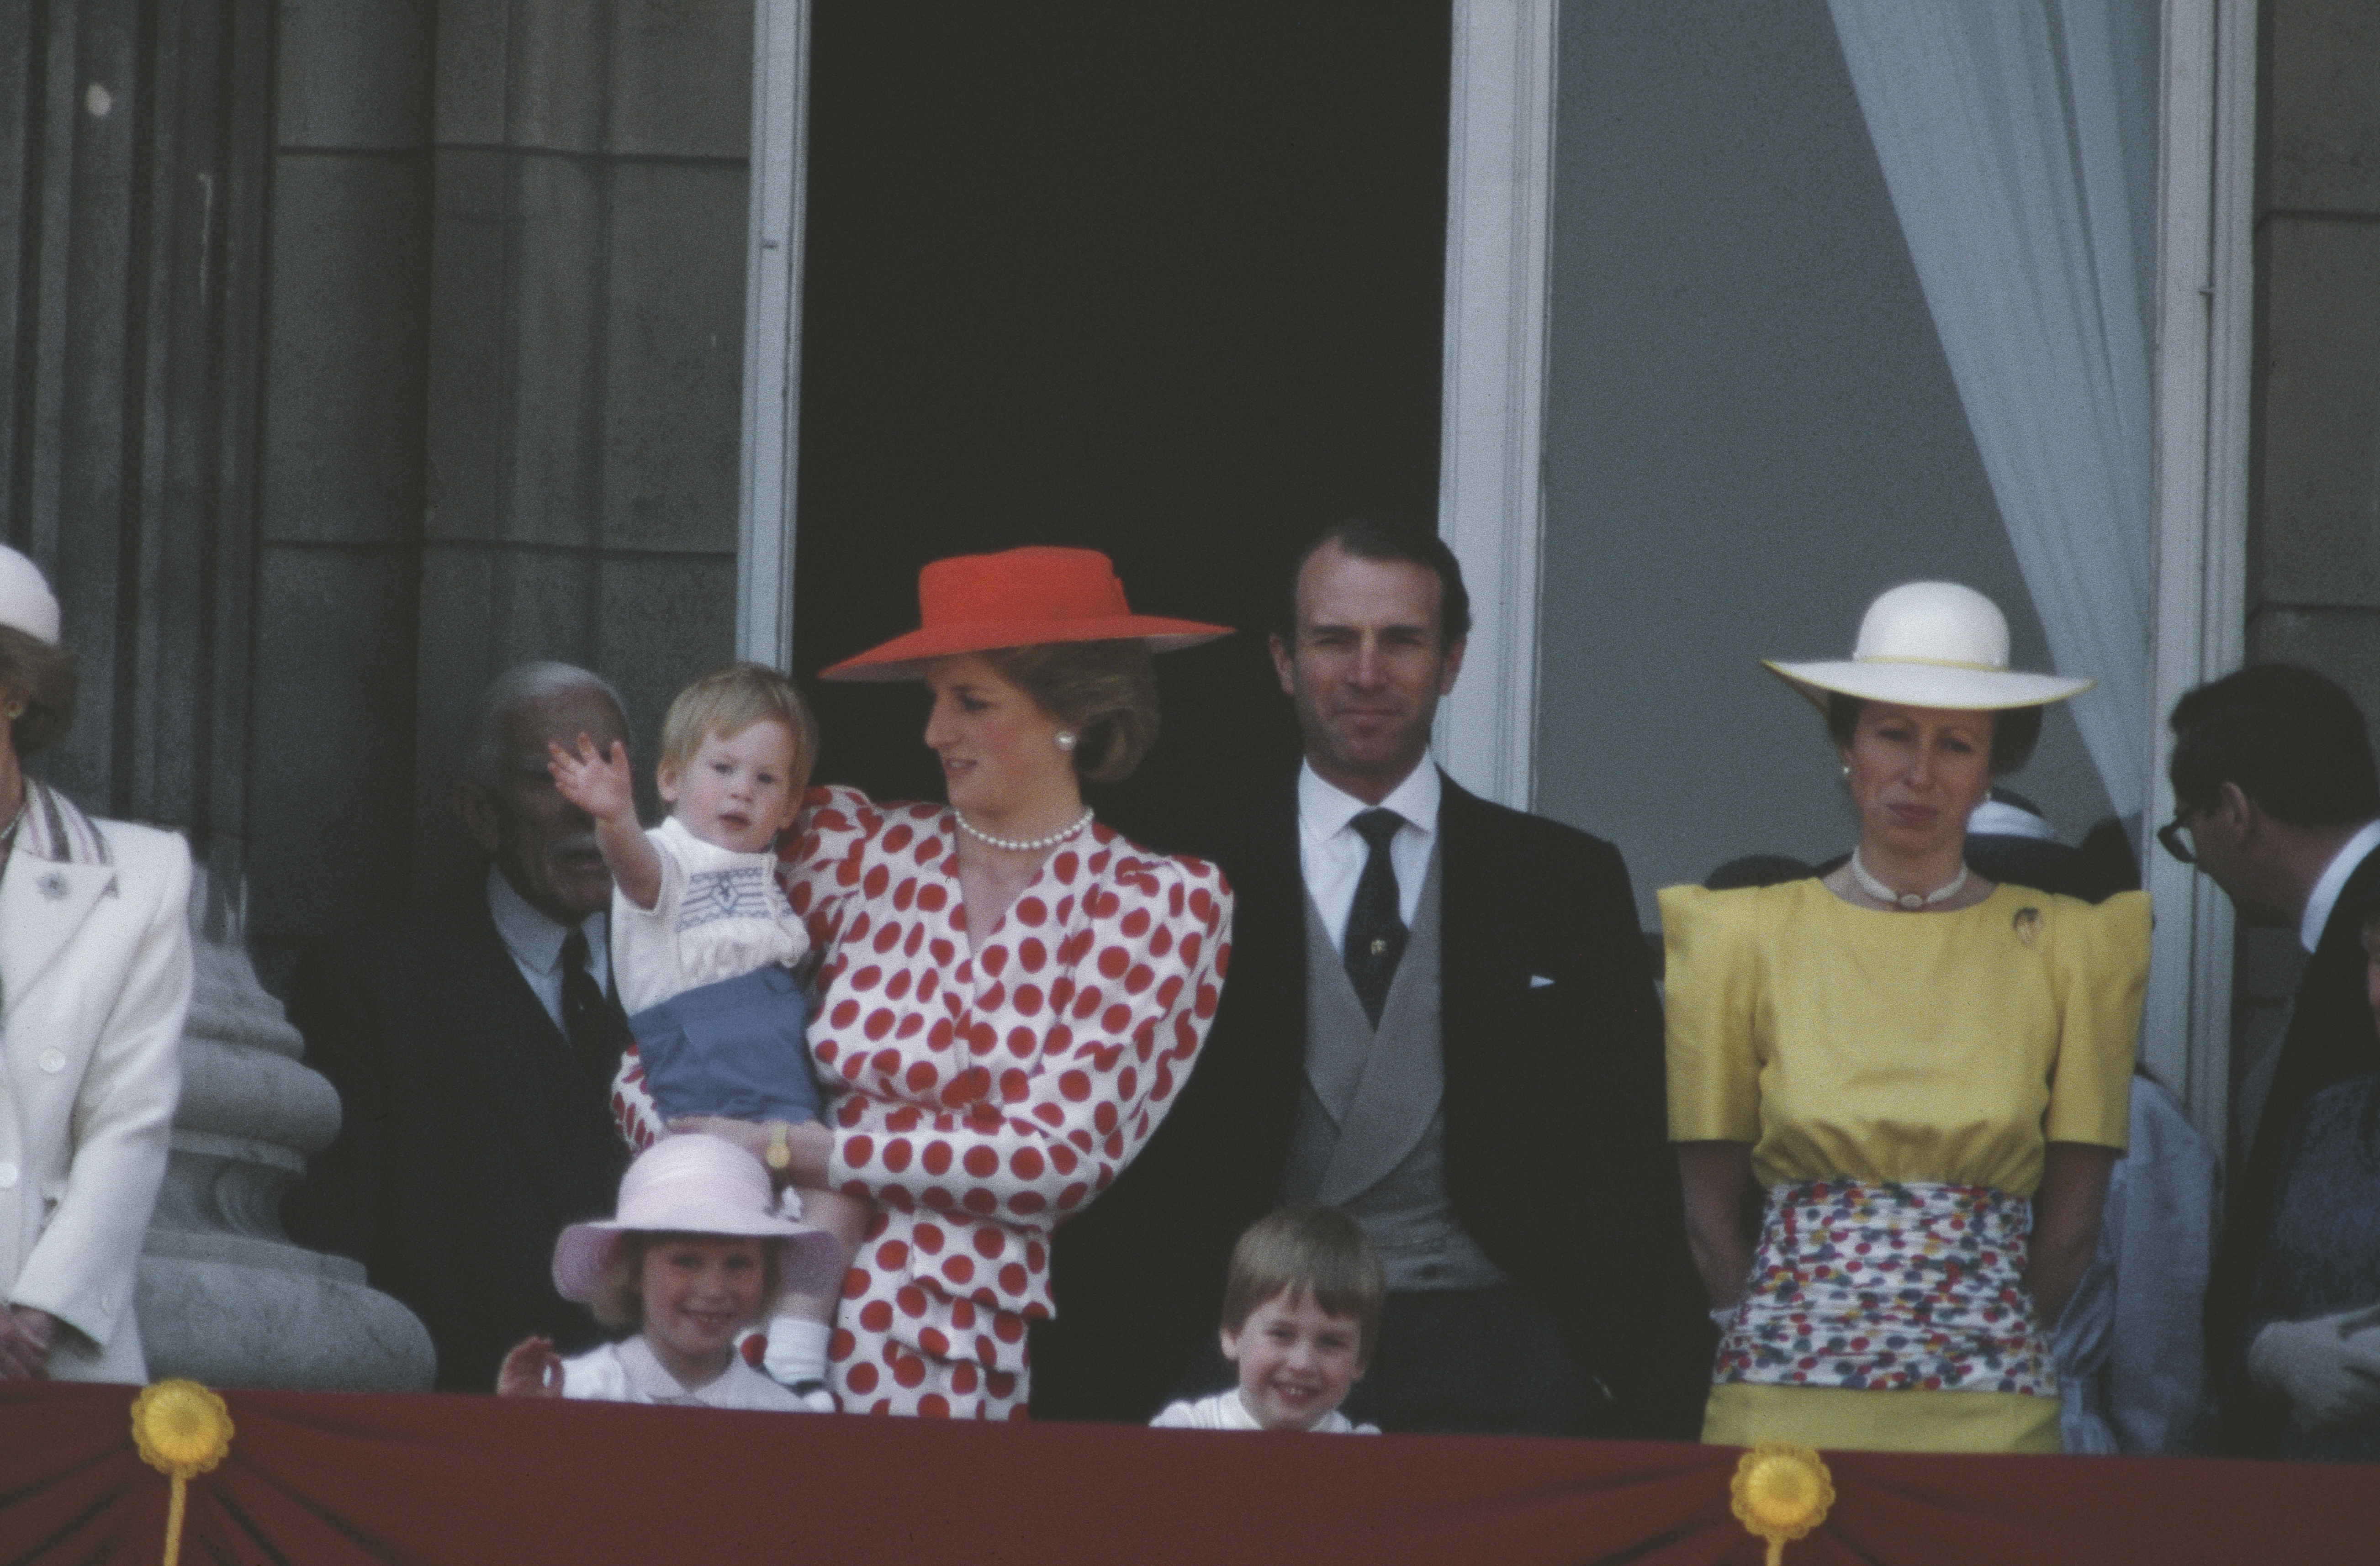 La princesa Diana sostiene al príncipe Harry, con el príncipe William, la princesa Anne y Mark Phillips en el balcón para la ceremonia Trooping the Colour en junio de 1986. | Foto: Getty Images